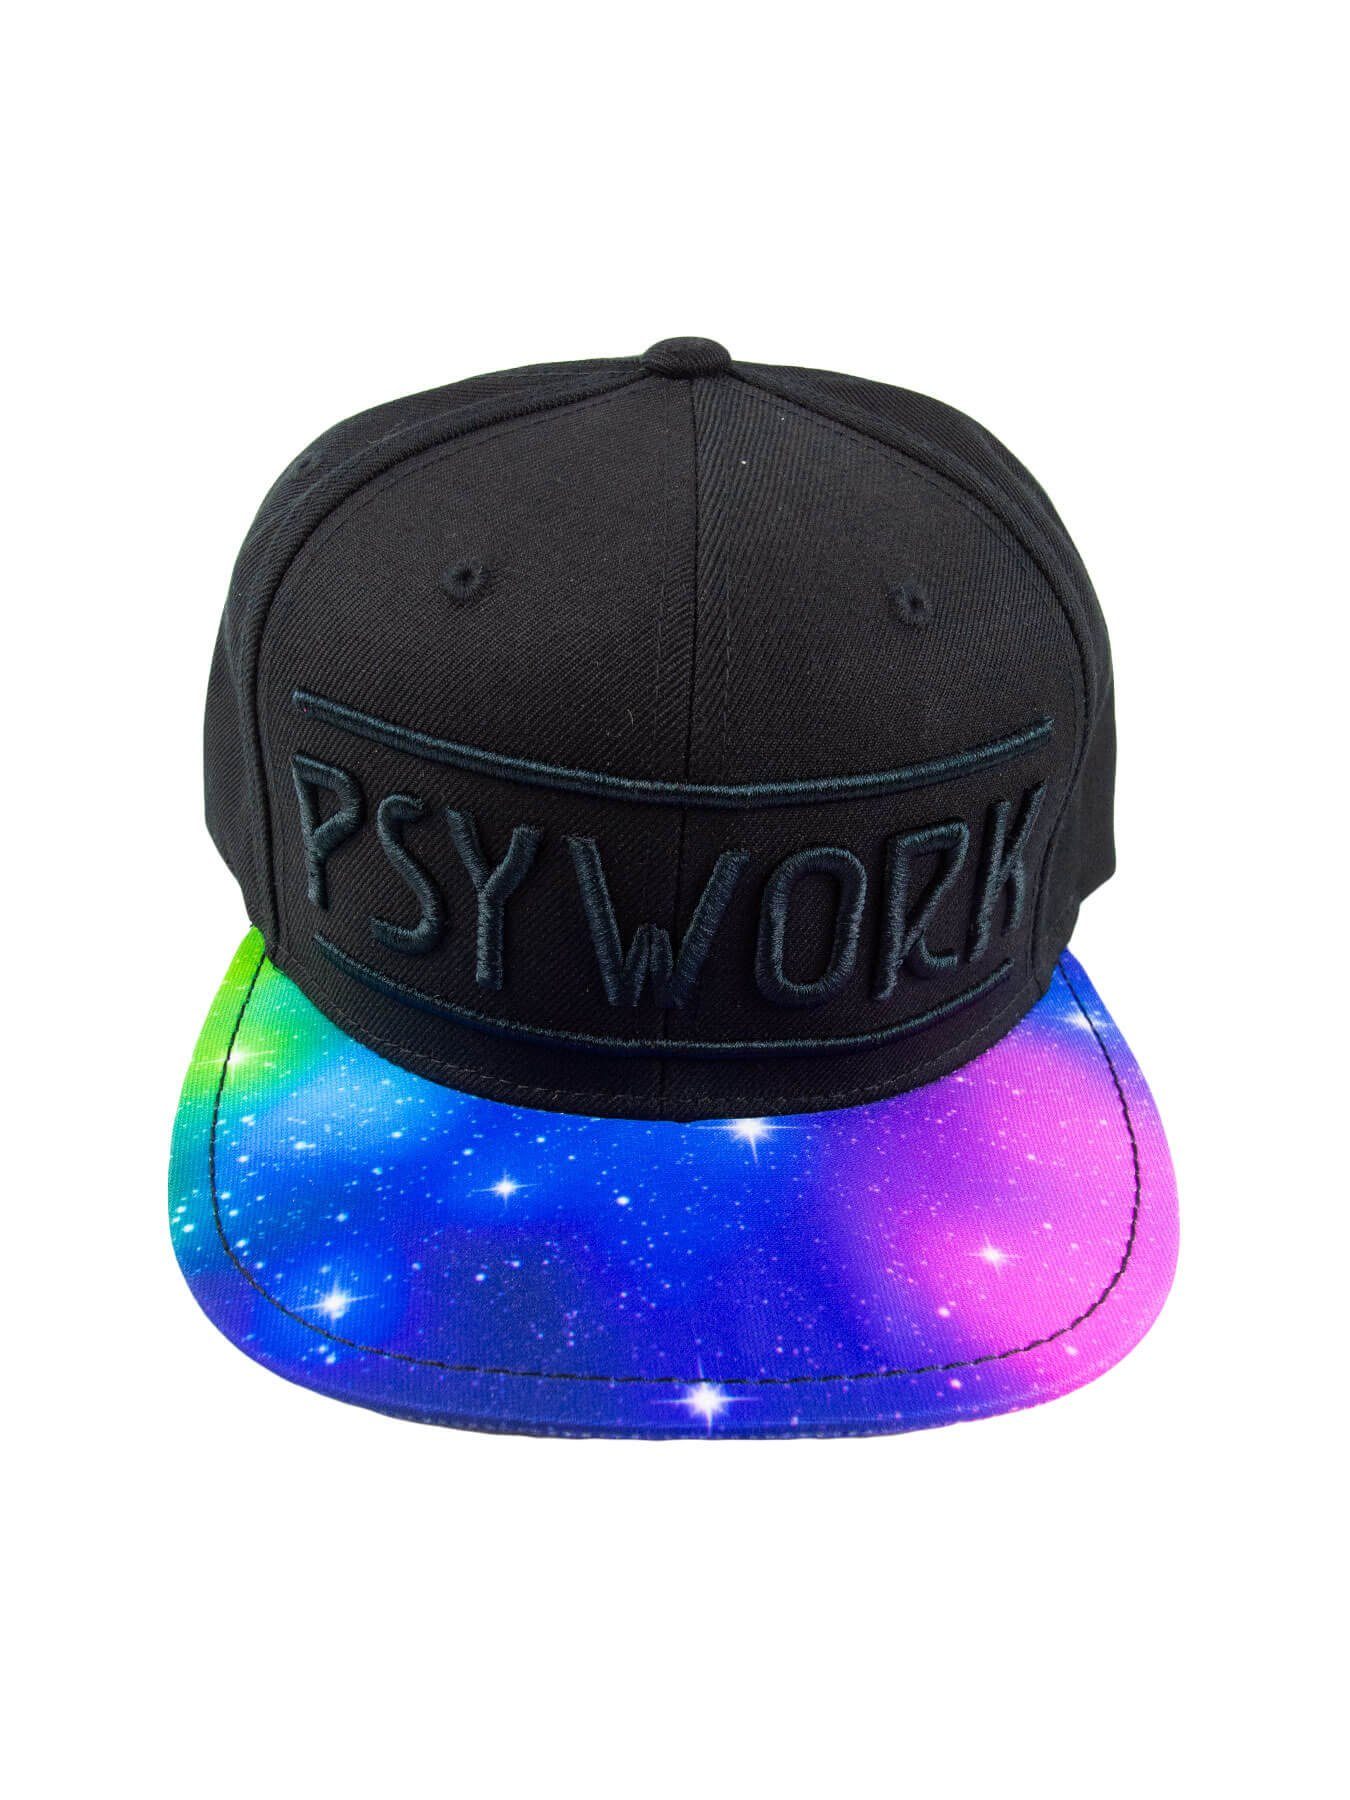 PSYWORK Snapback Cap Schwarzlicht Black Cap Neon "Psychedelic Universe", Schwarz UV-aktiv, leuchtet unter Schwarzlicht